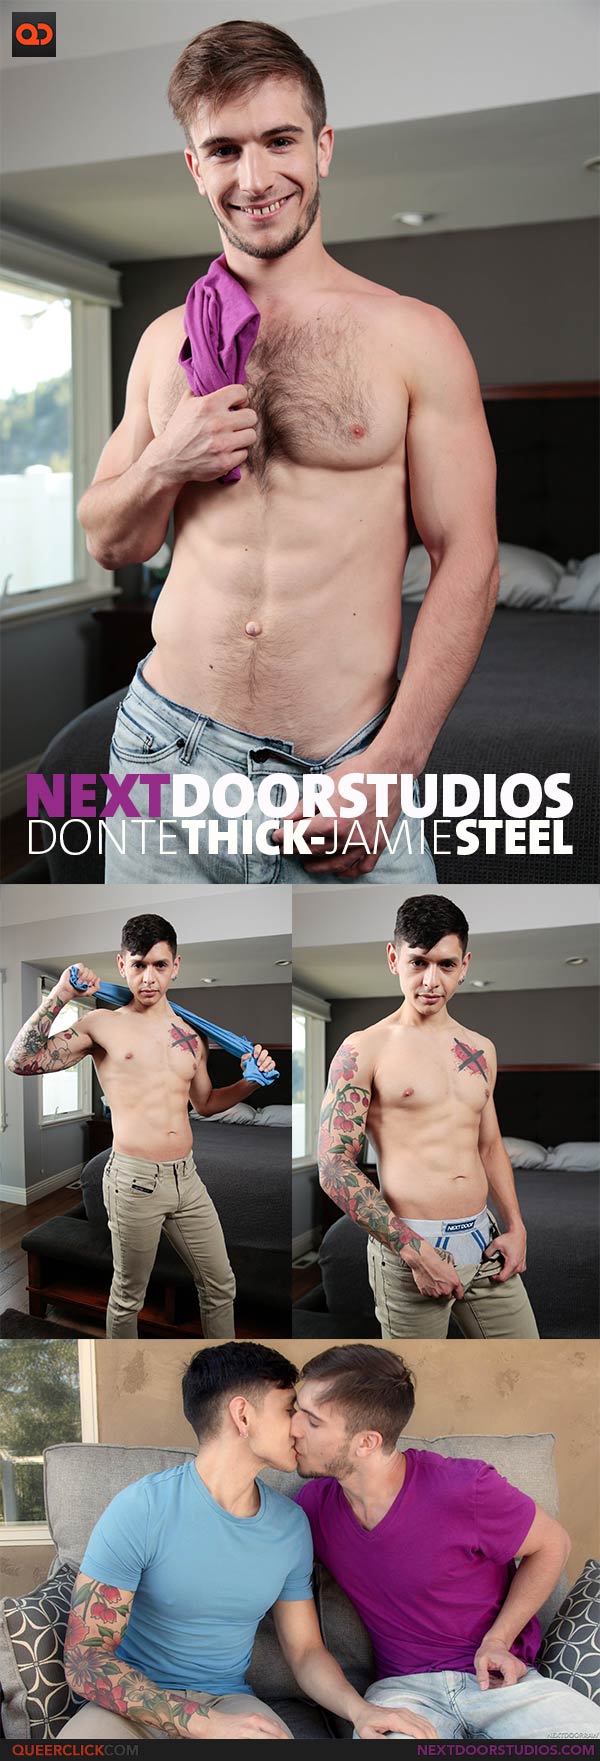 Next Door Studios: Donte Thick and Jamie Steel